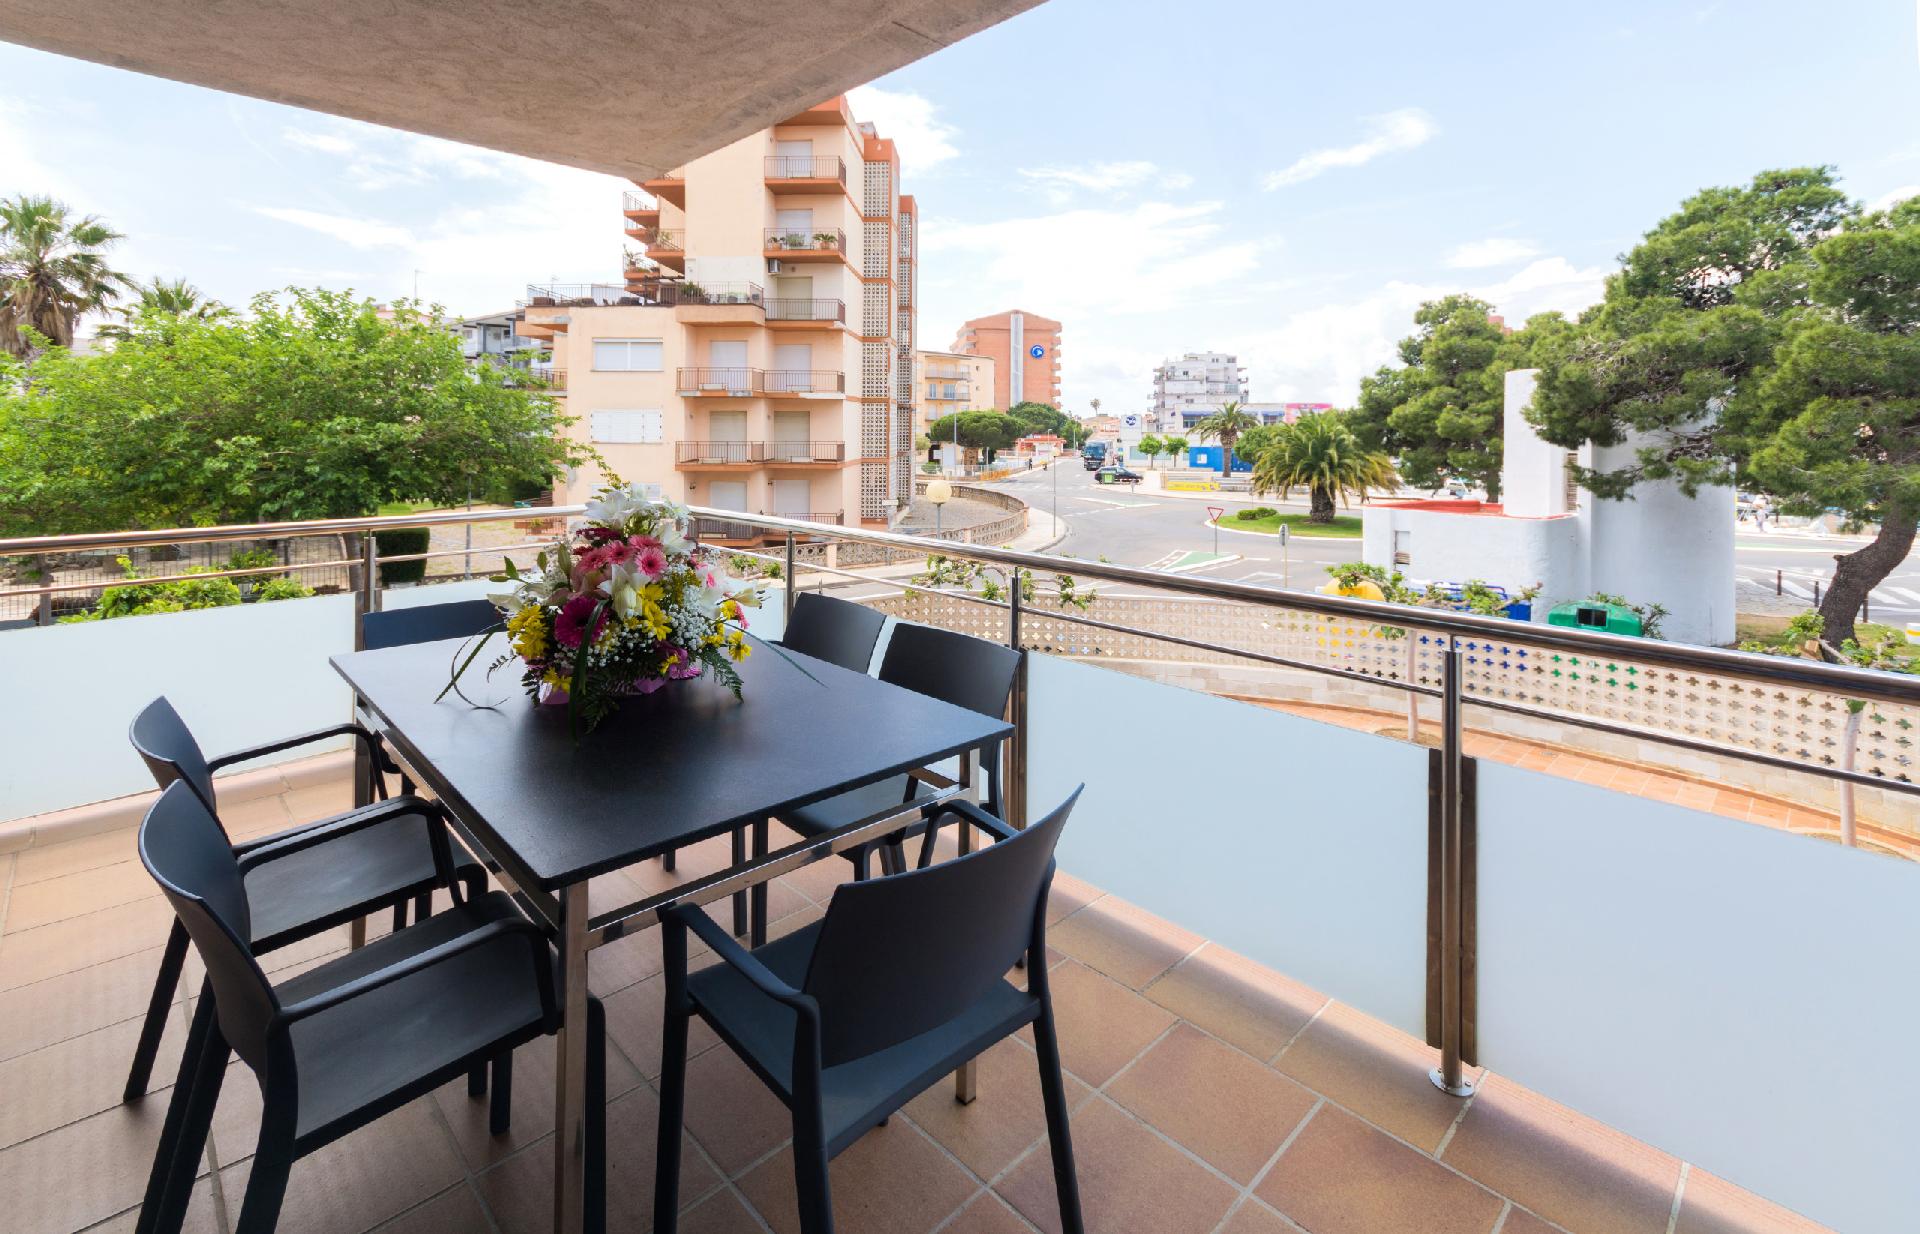 Ferienwohnung für 6 Personen ca. 55 m² i  in Spanien